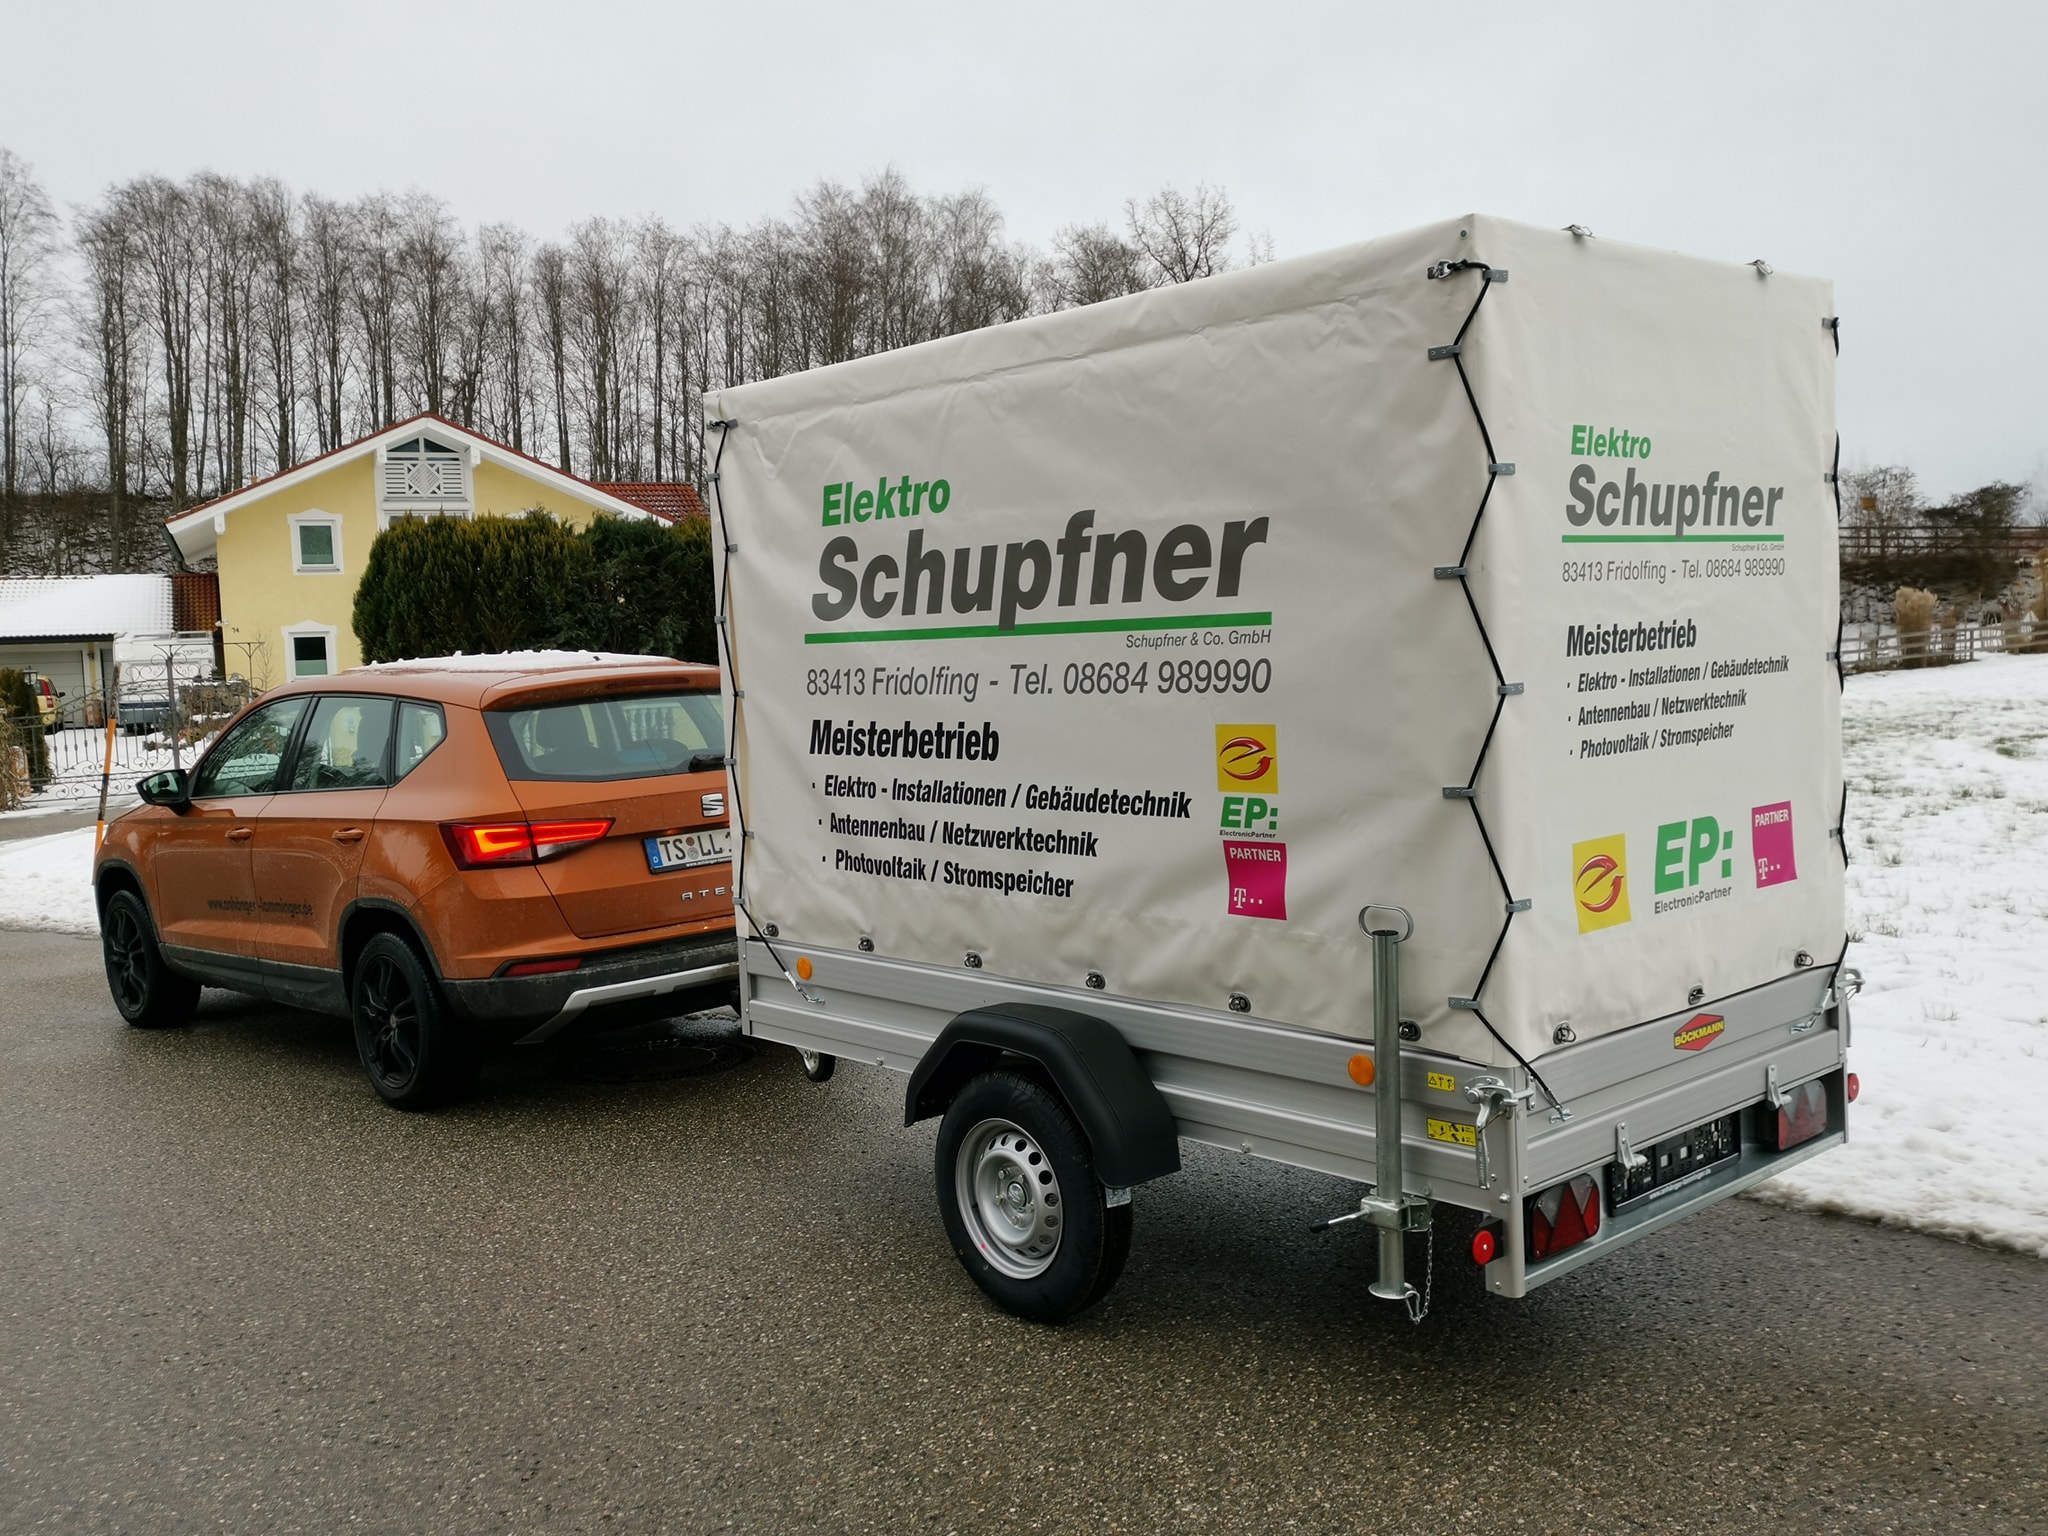 Elektro Schupfner